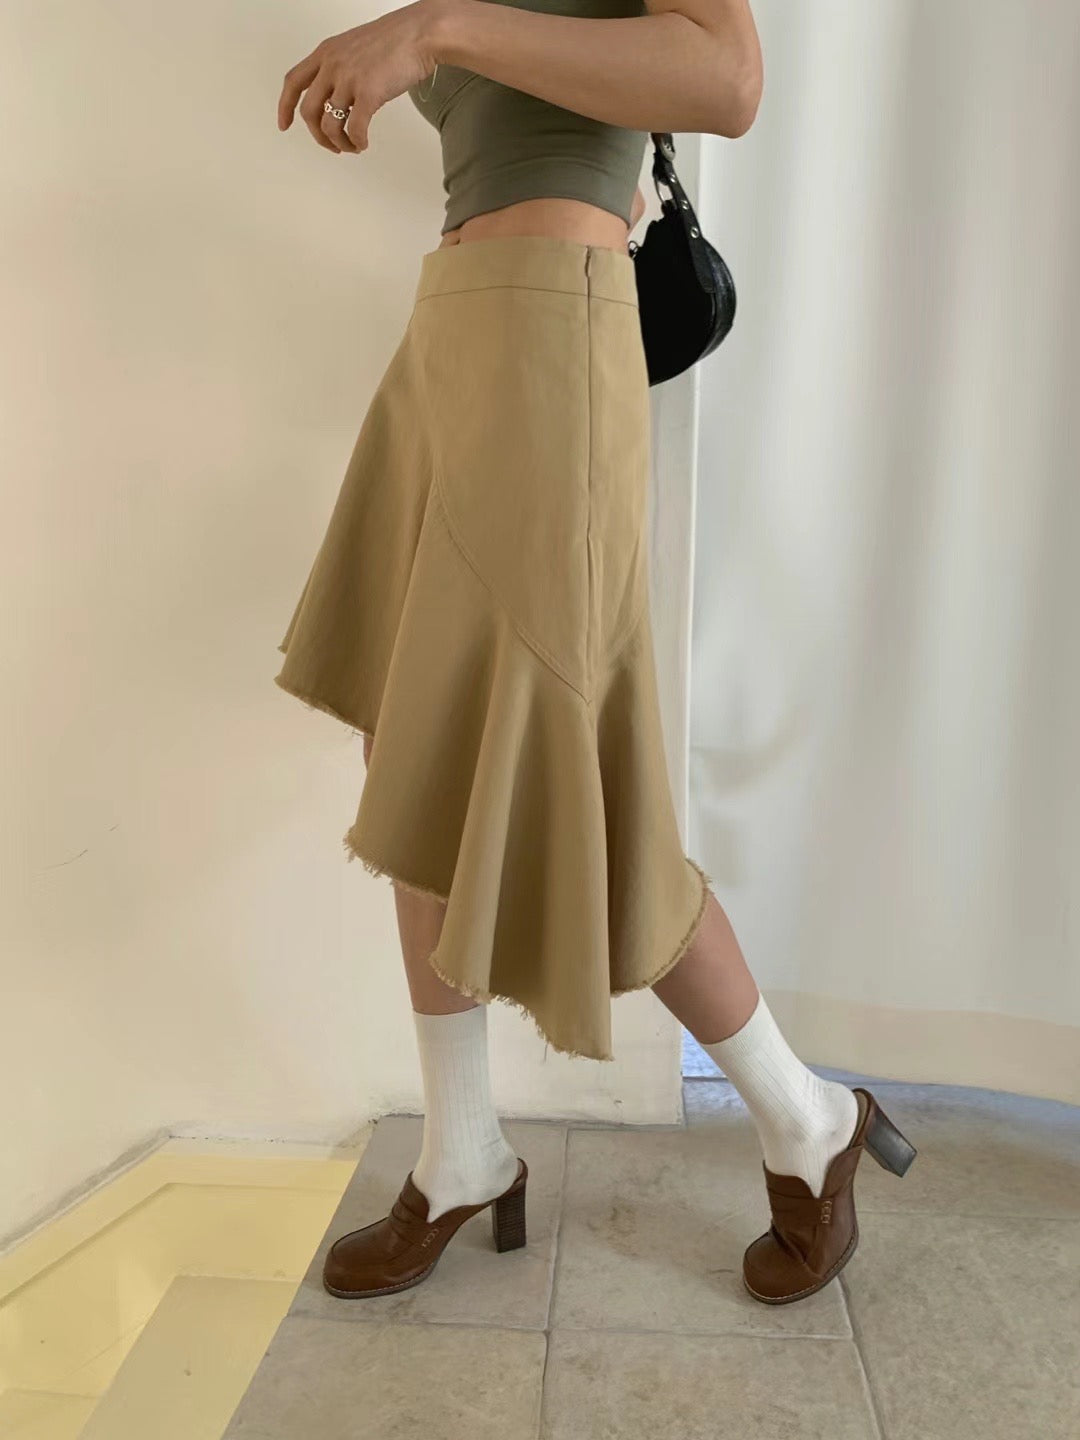 Irregular skirt